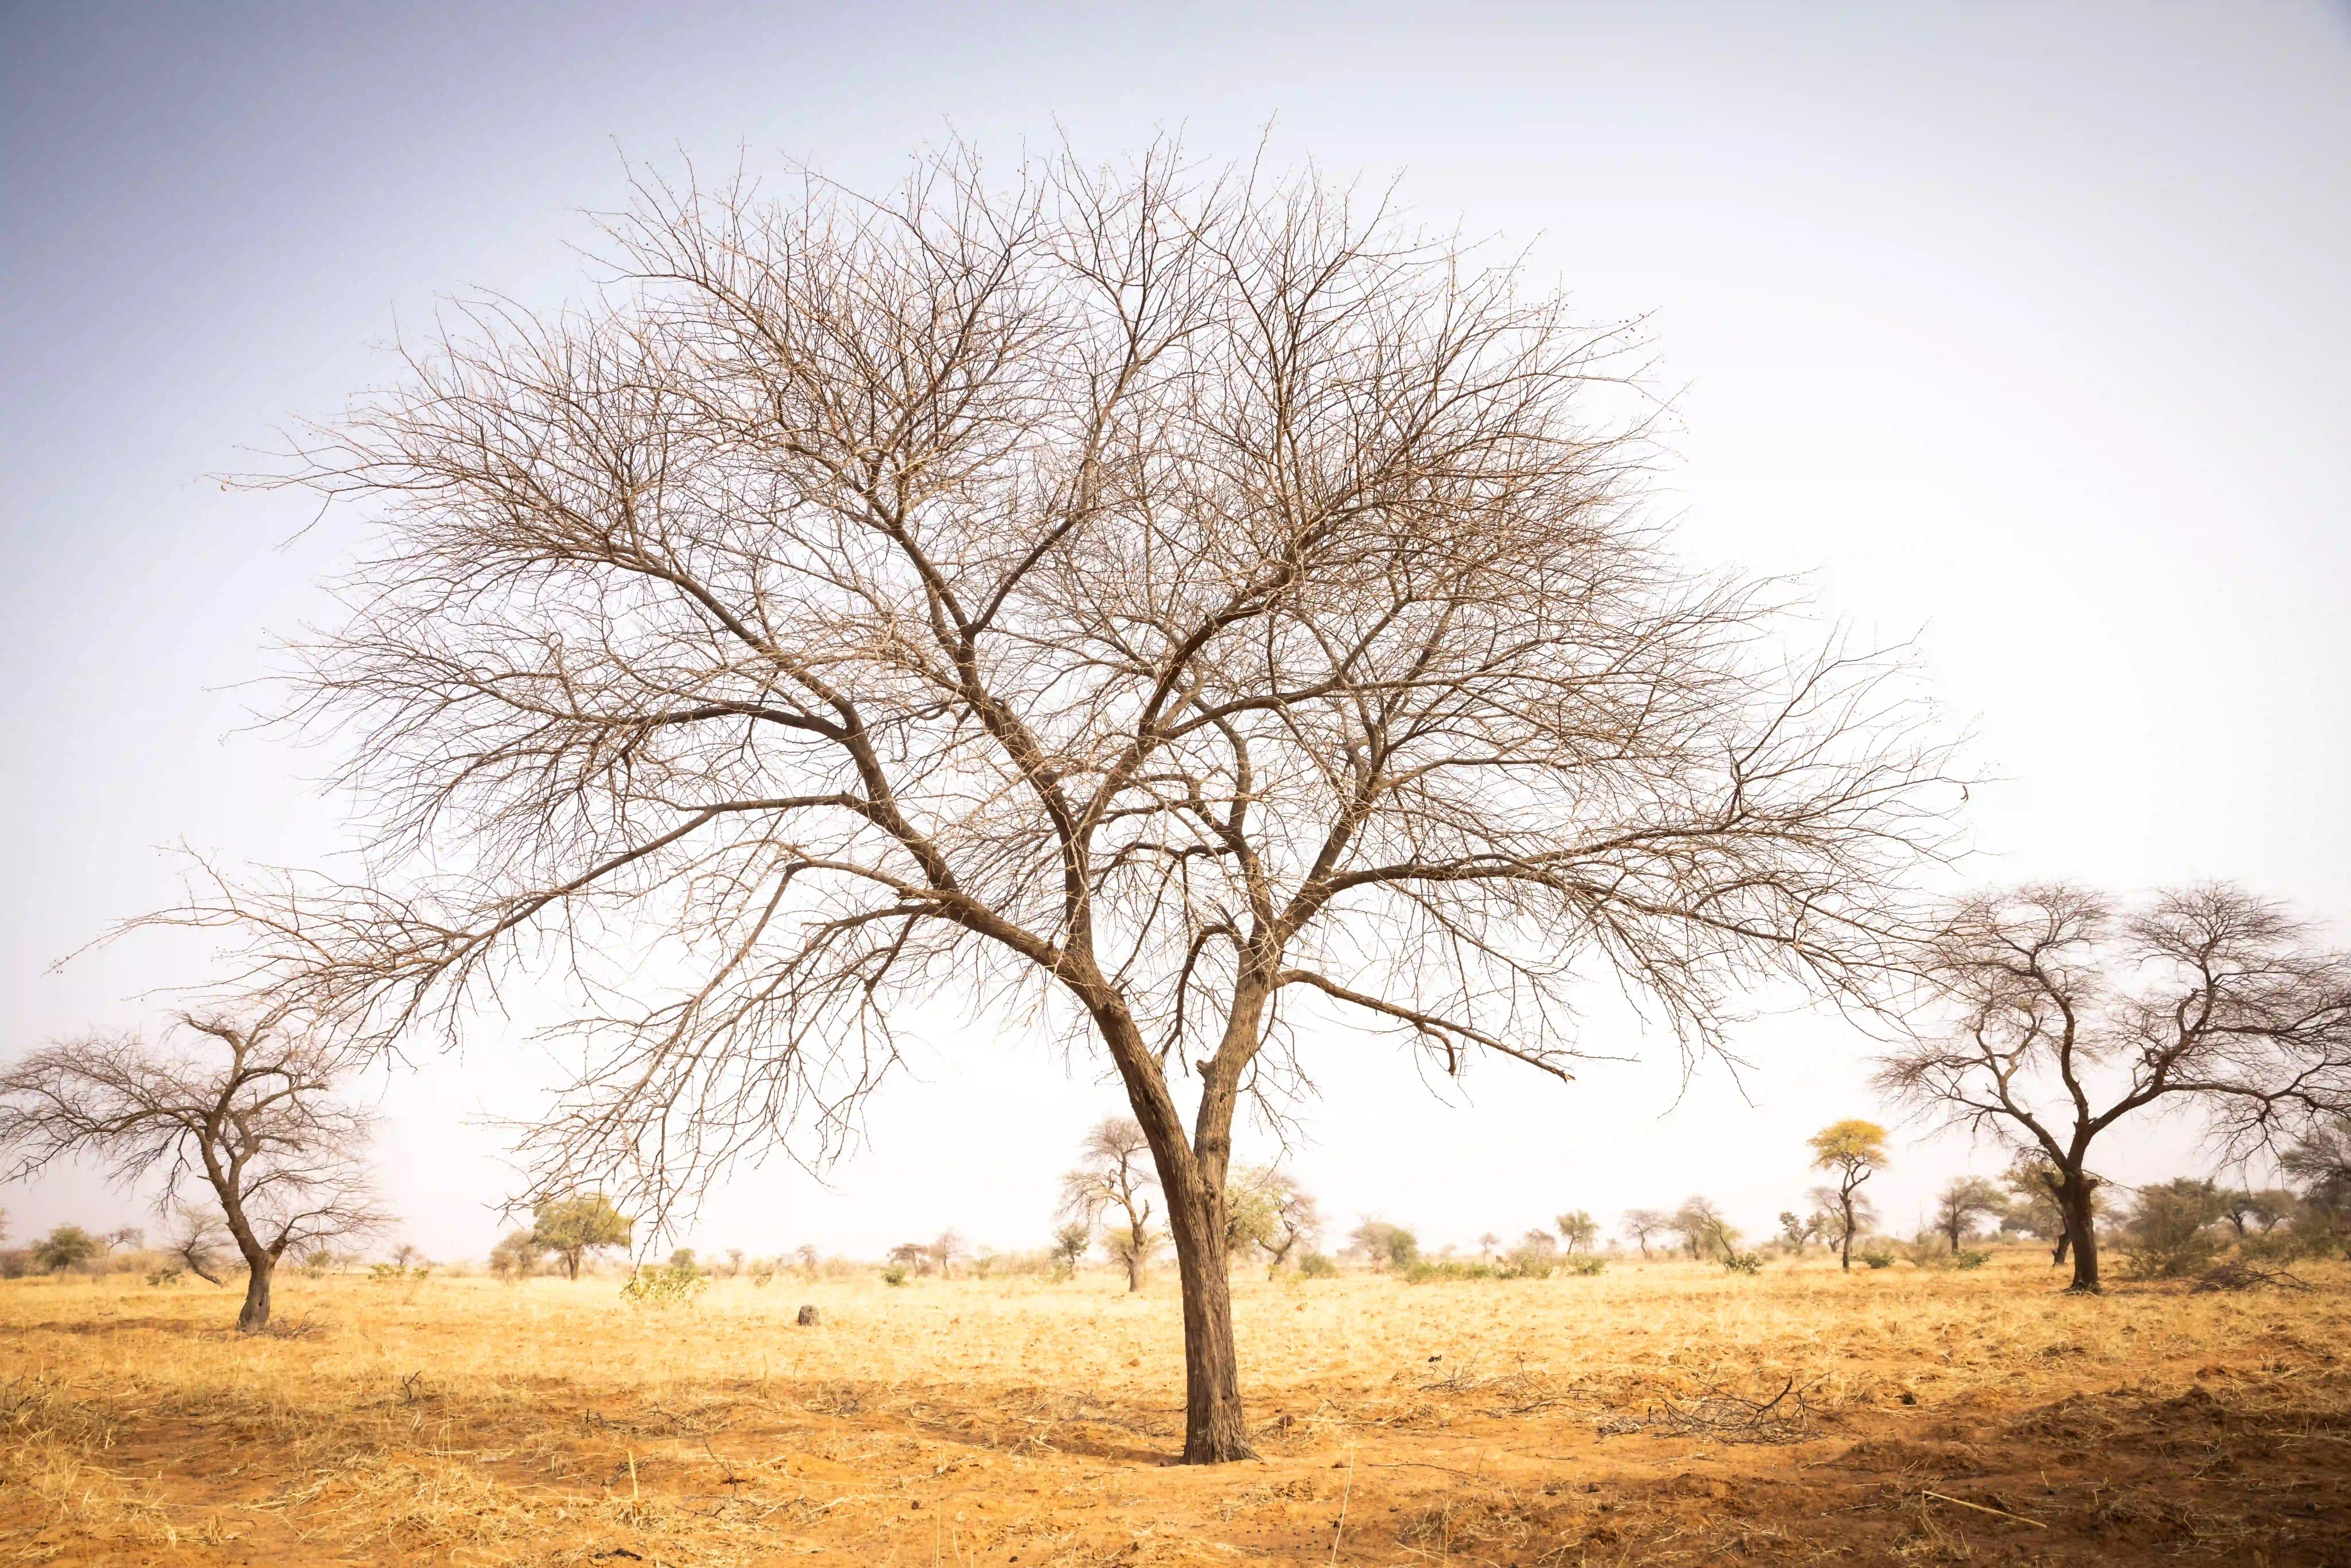 A tree in an arid environment